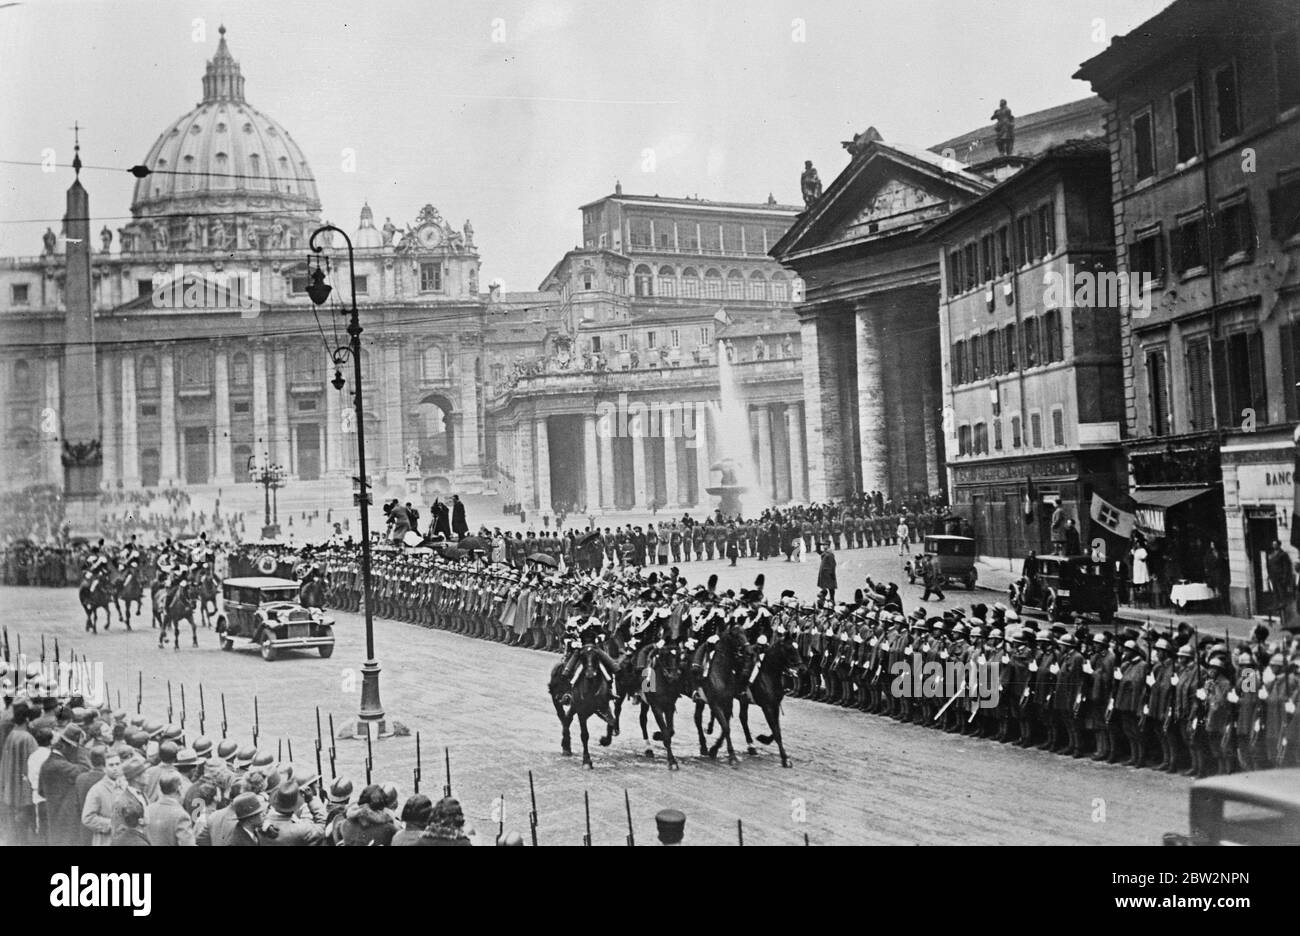 Missolini et le Pape se rencontrent pour la première fois . Avec toute la cérémonie majestueuse du Vatican , Signor Mussolini , le dictateur italien , et le Pape Ppuis XI , chef de l'Eglise catholique romane , se sont réunis pour la première fois pour s'asseoir sur le sceau du grand travail de rétablissement de la paix religieuse en Italie . La scène comme Signor Mussolini est arrivée dans l'Etat au Vatican pour sa visite au Pape . 13 février 1932 Banque D'Images